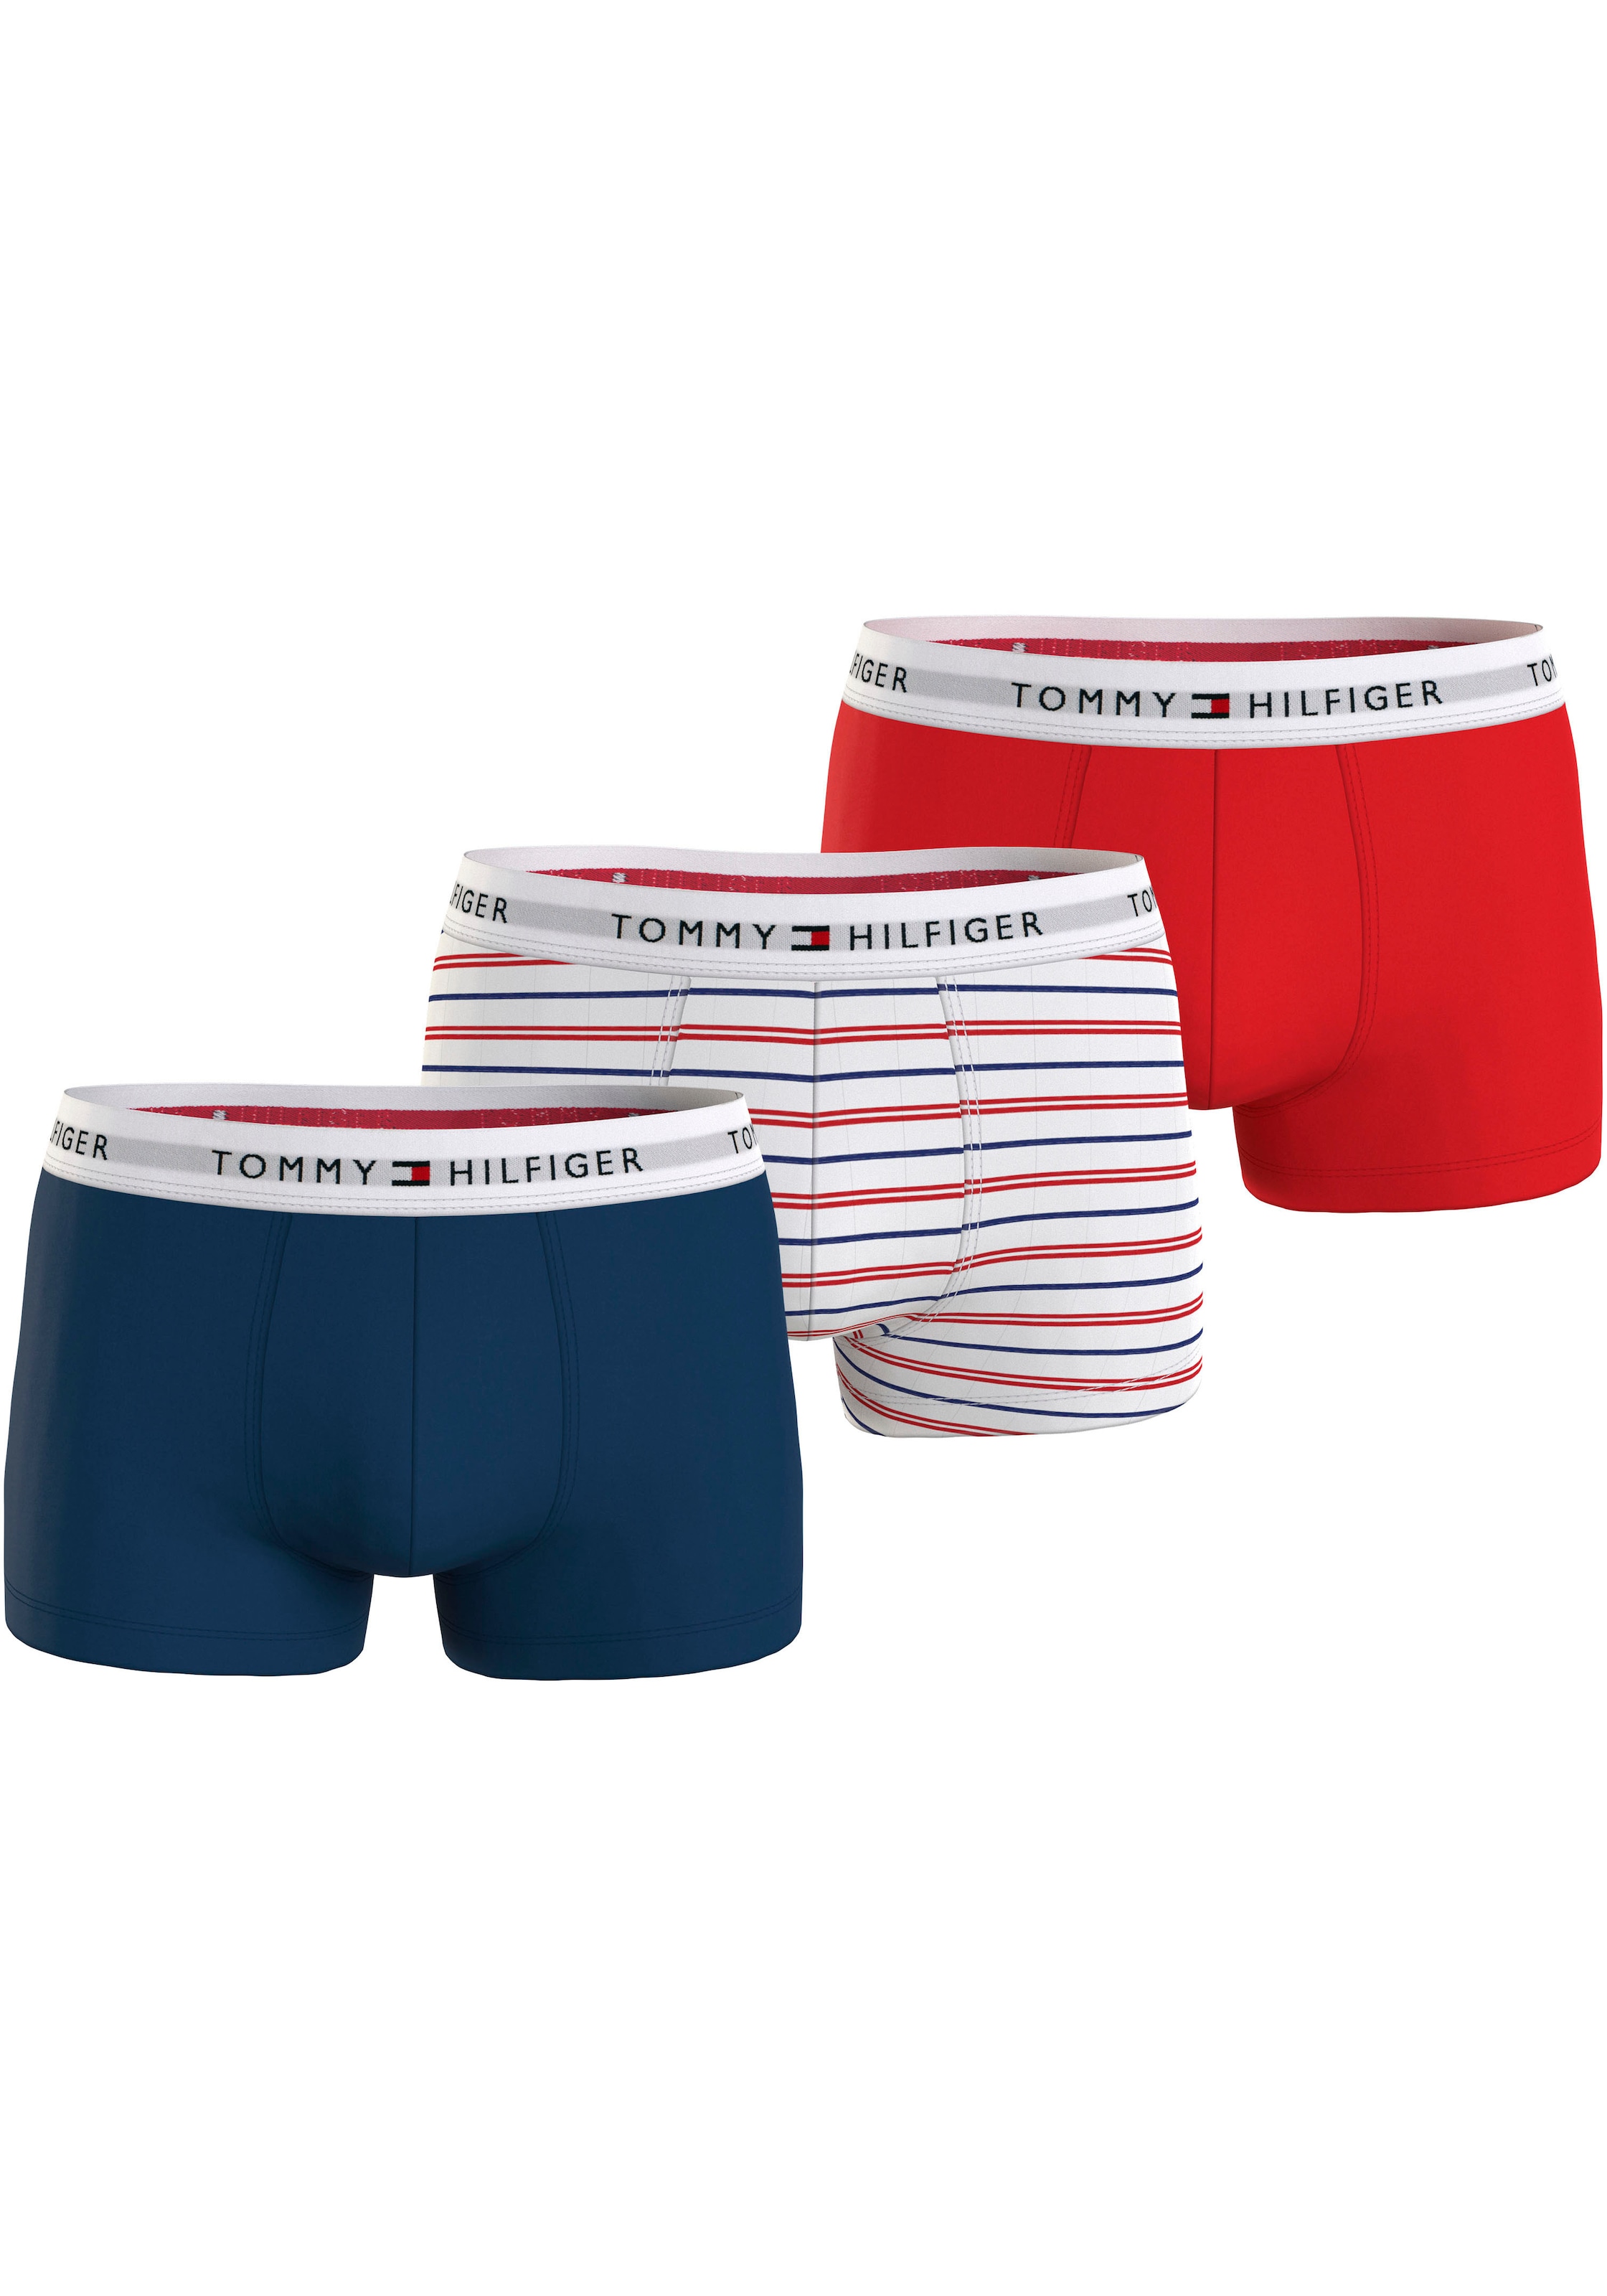 Tommy Hilfiger Underwear online BAUR | kaufen